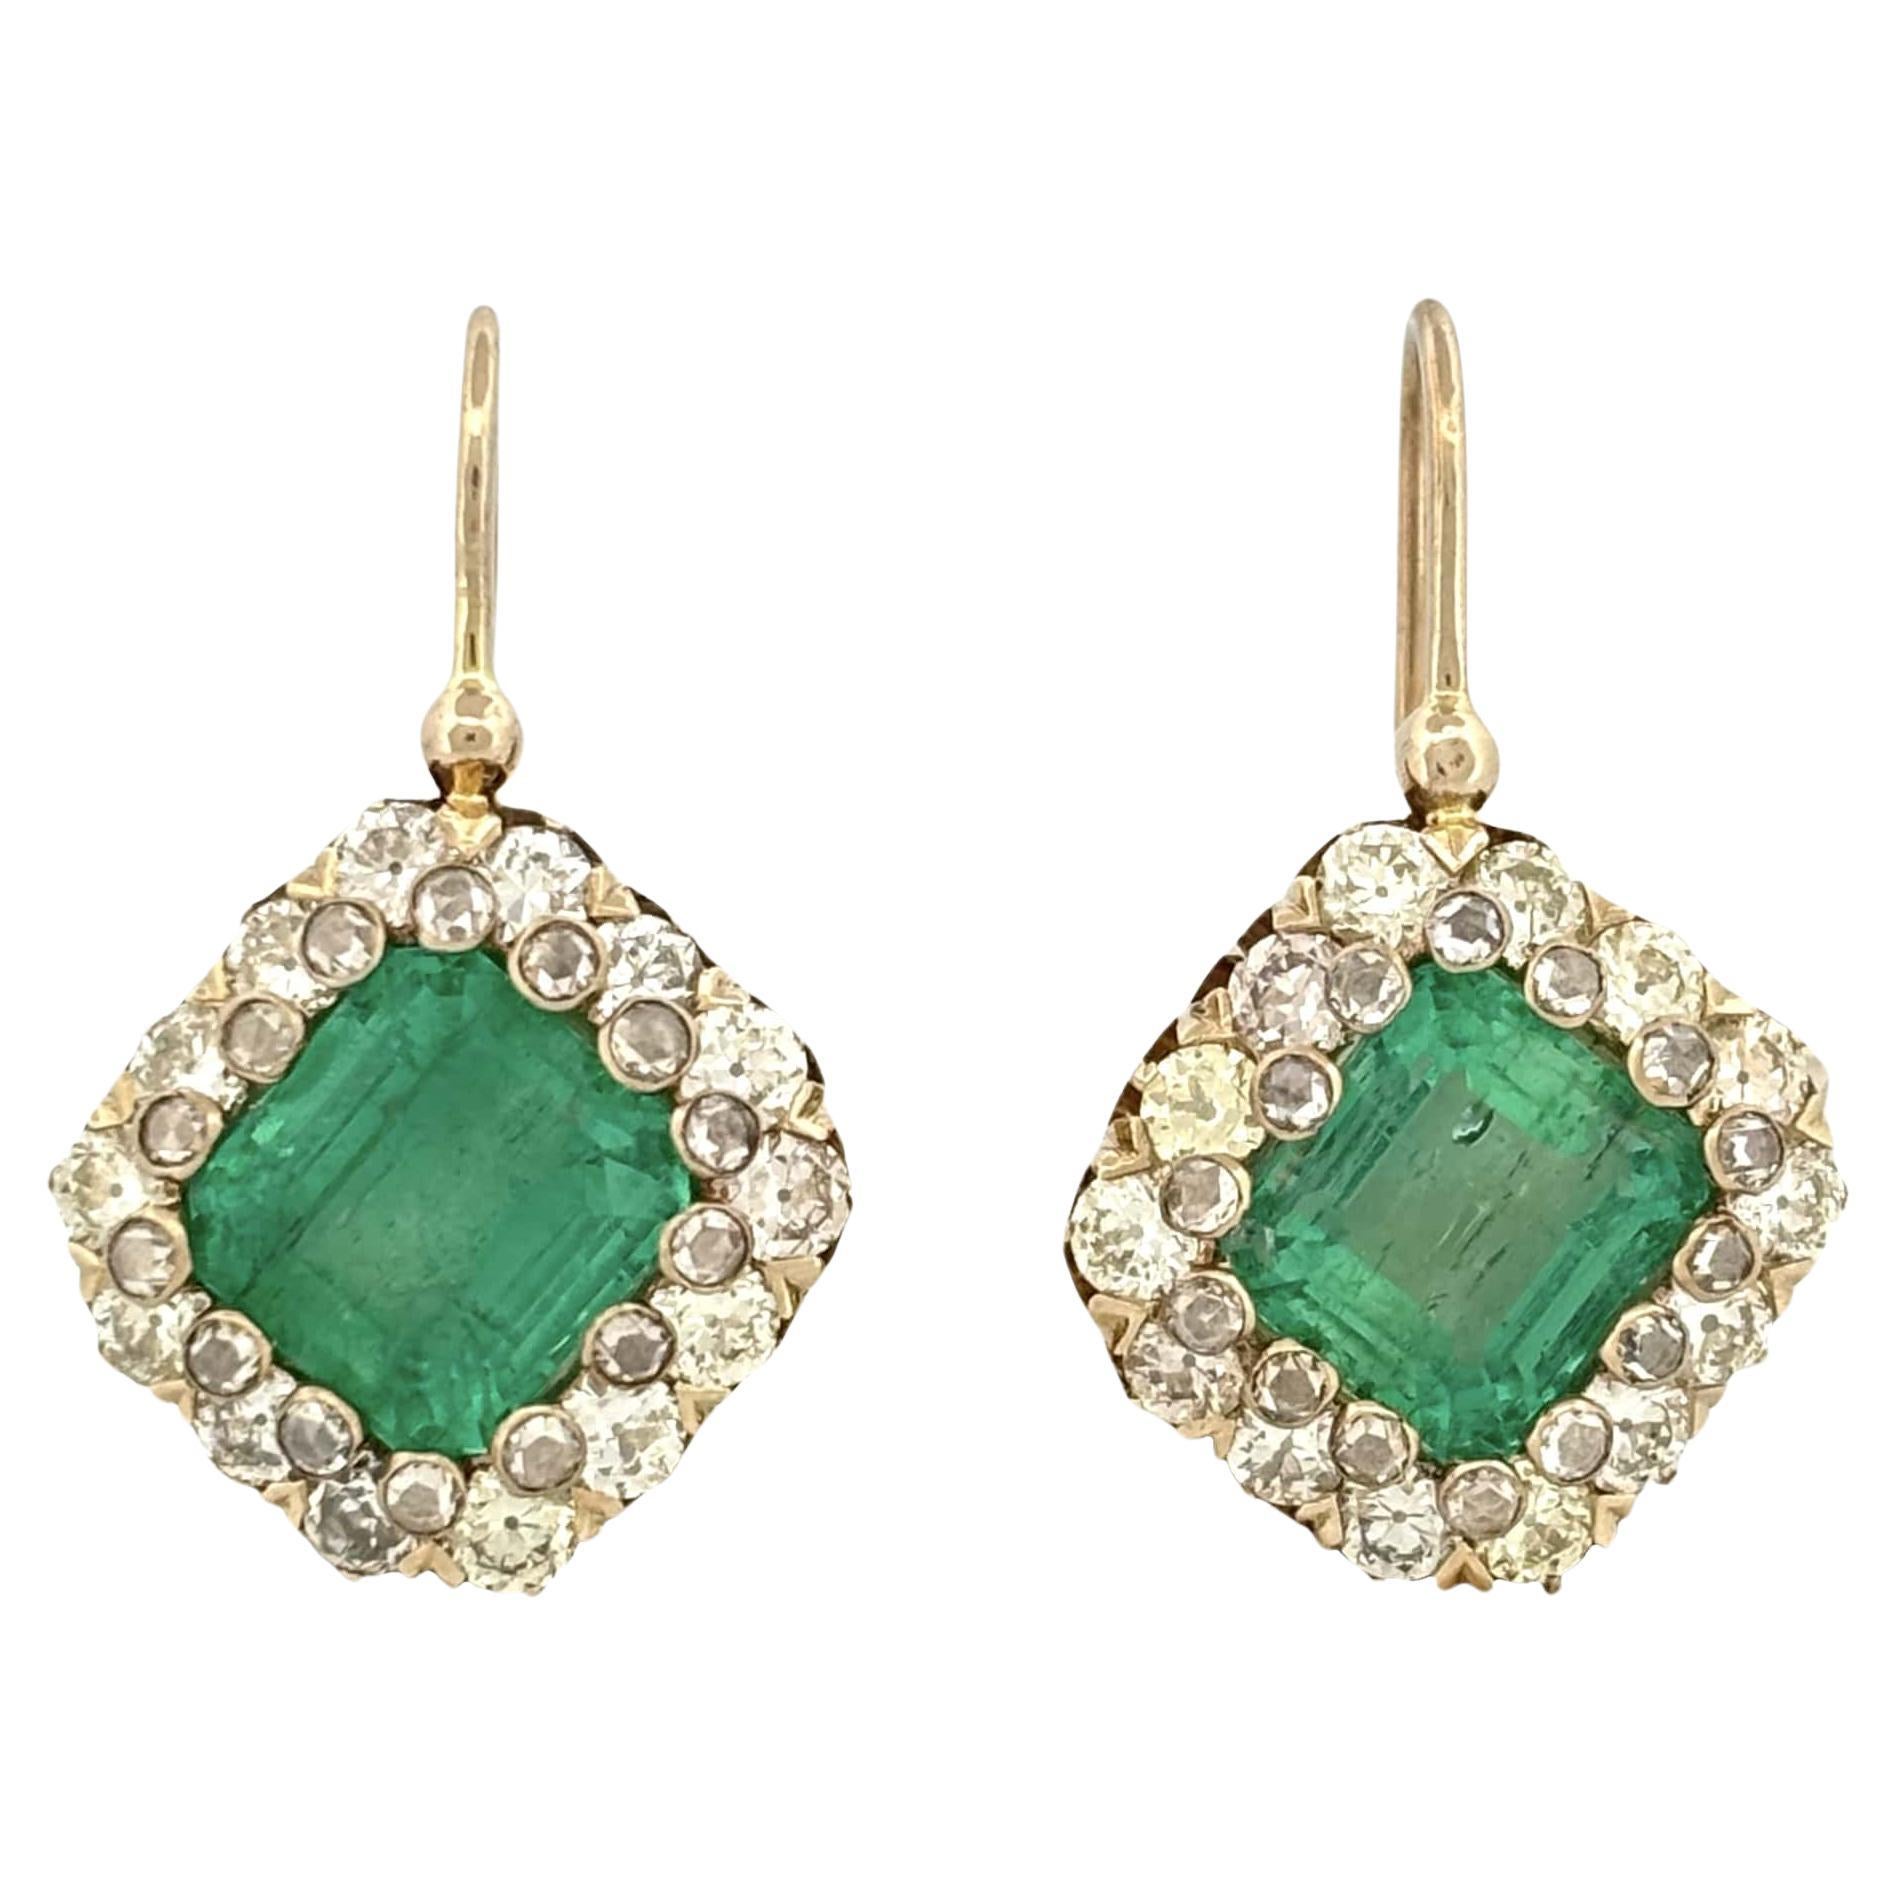 6.31 Carat Emerald Art Deco Style Earrings in 18K Gold